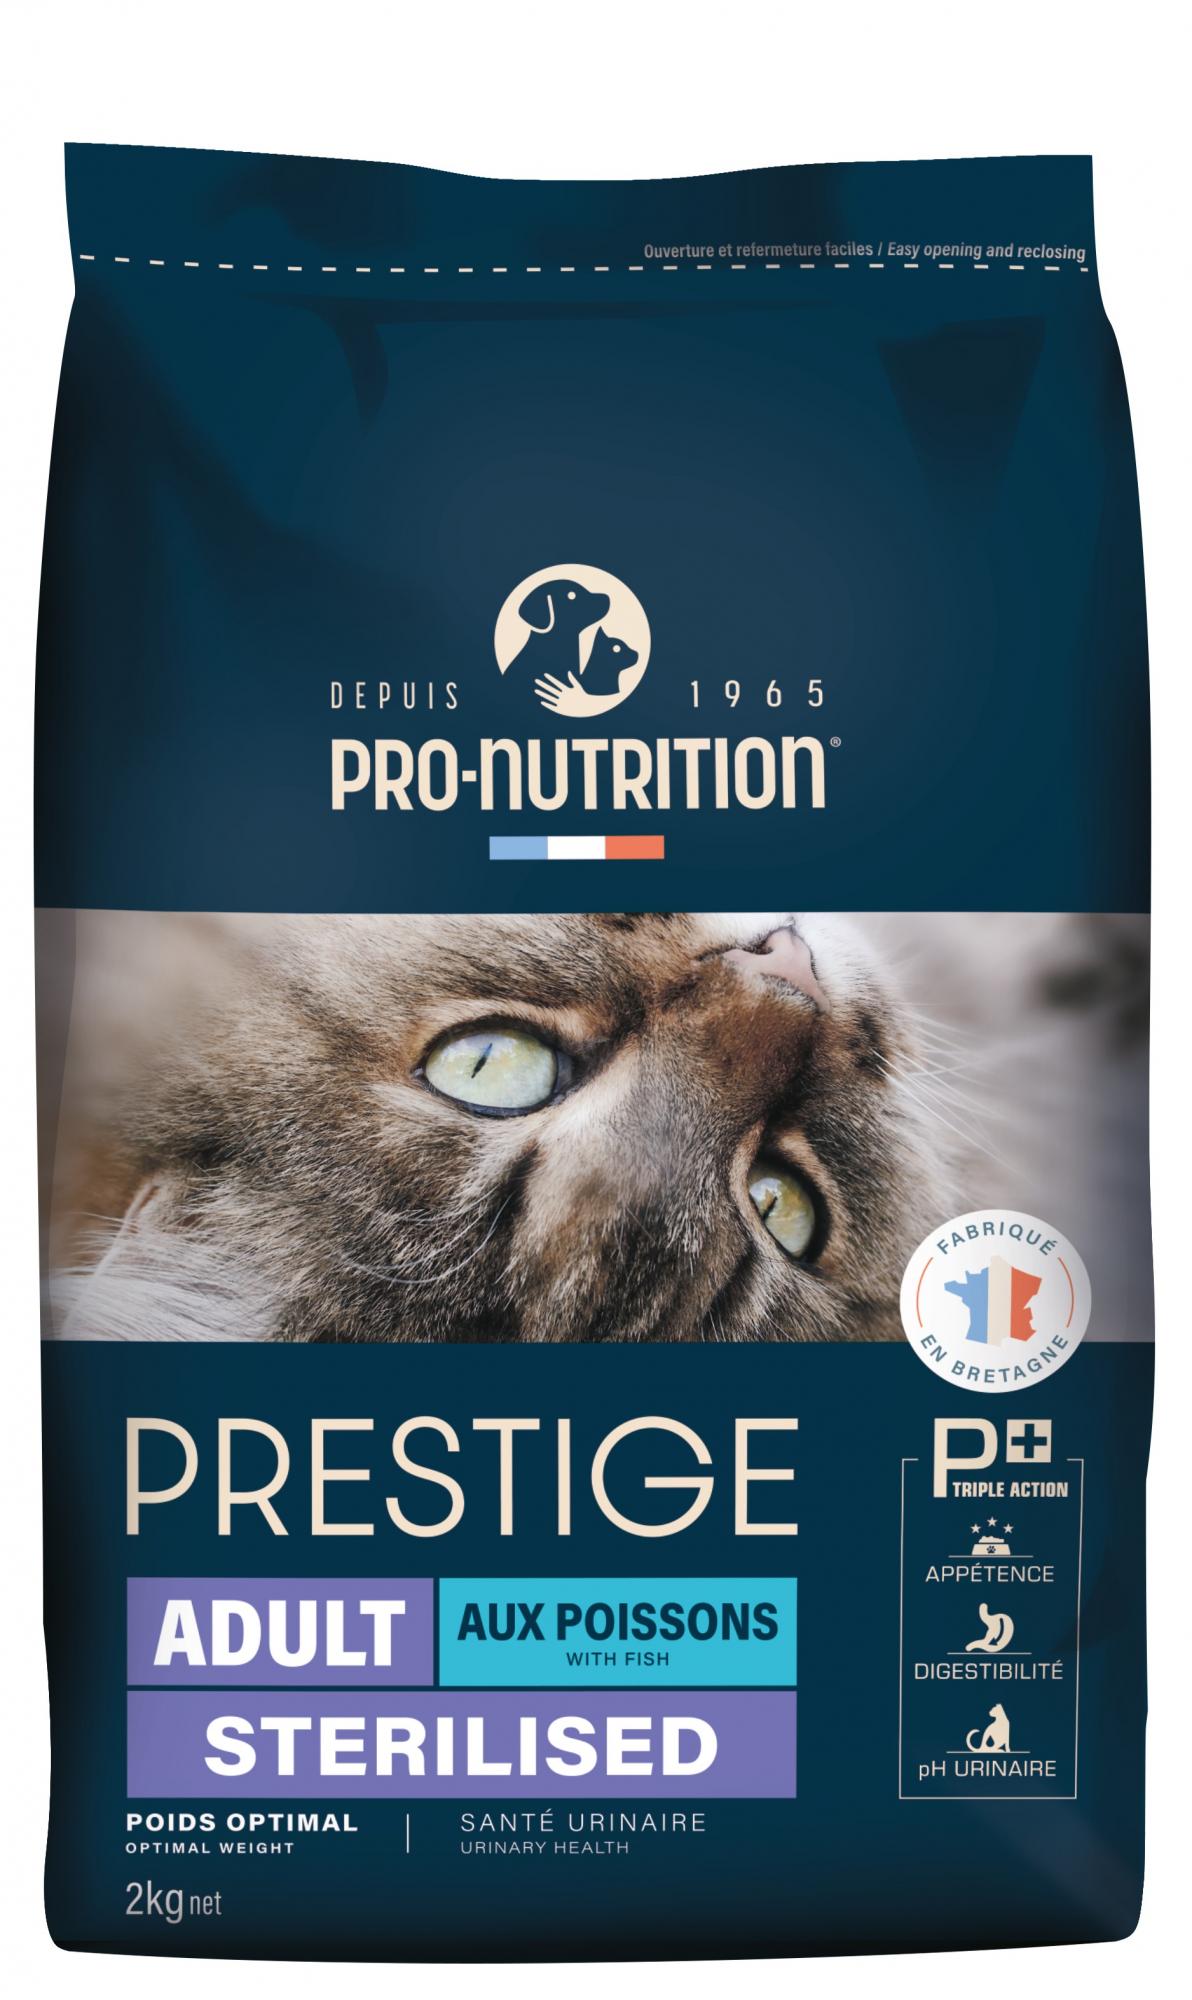 PRO-NUTRITION Flatazor CROCKTAILSterilized Mit Fisch für sterilisierte erwachsene Katzen